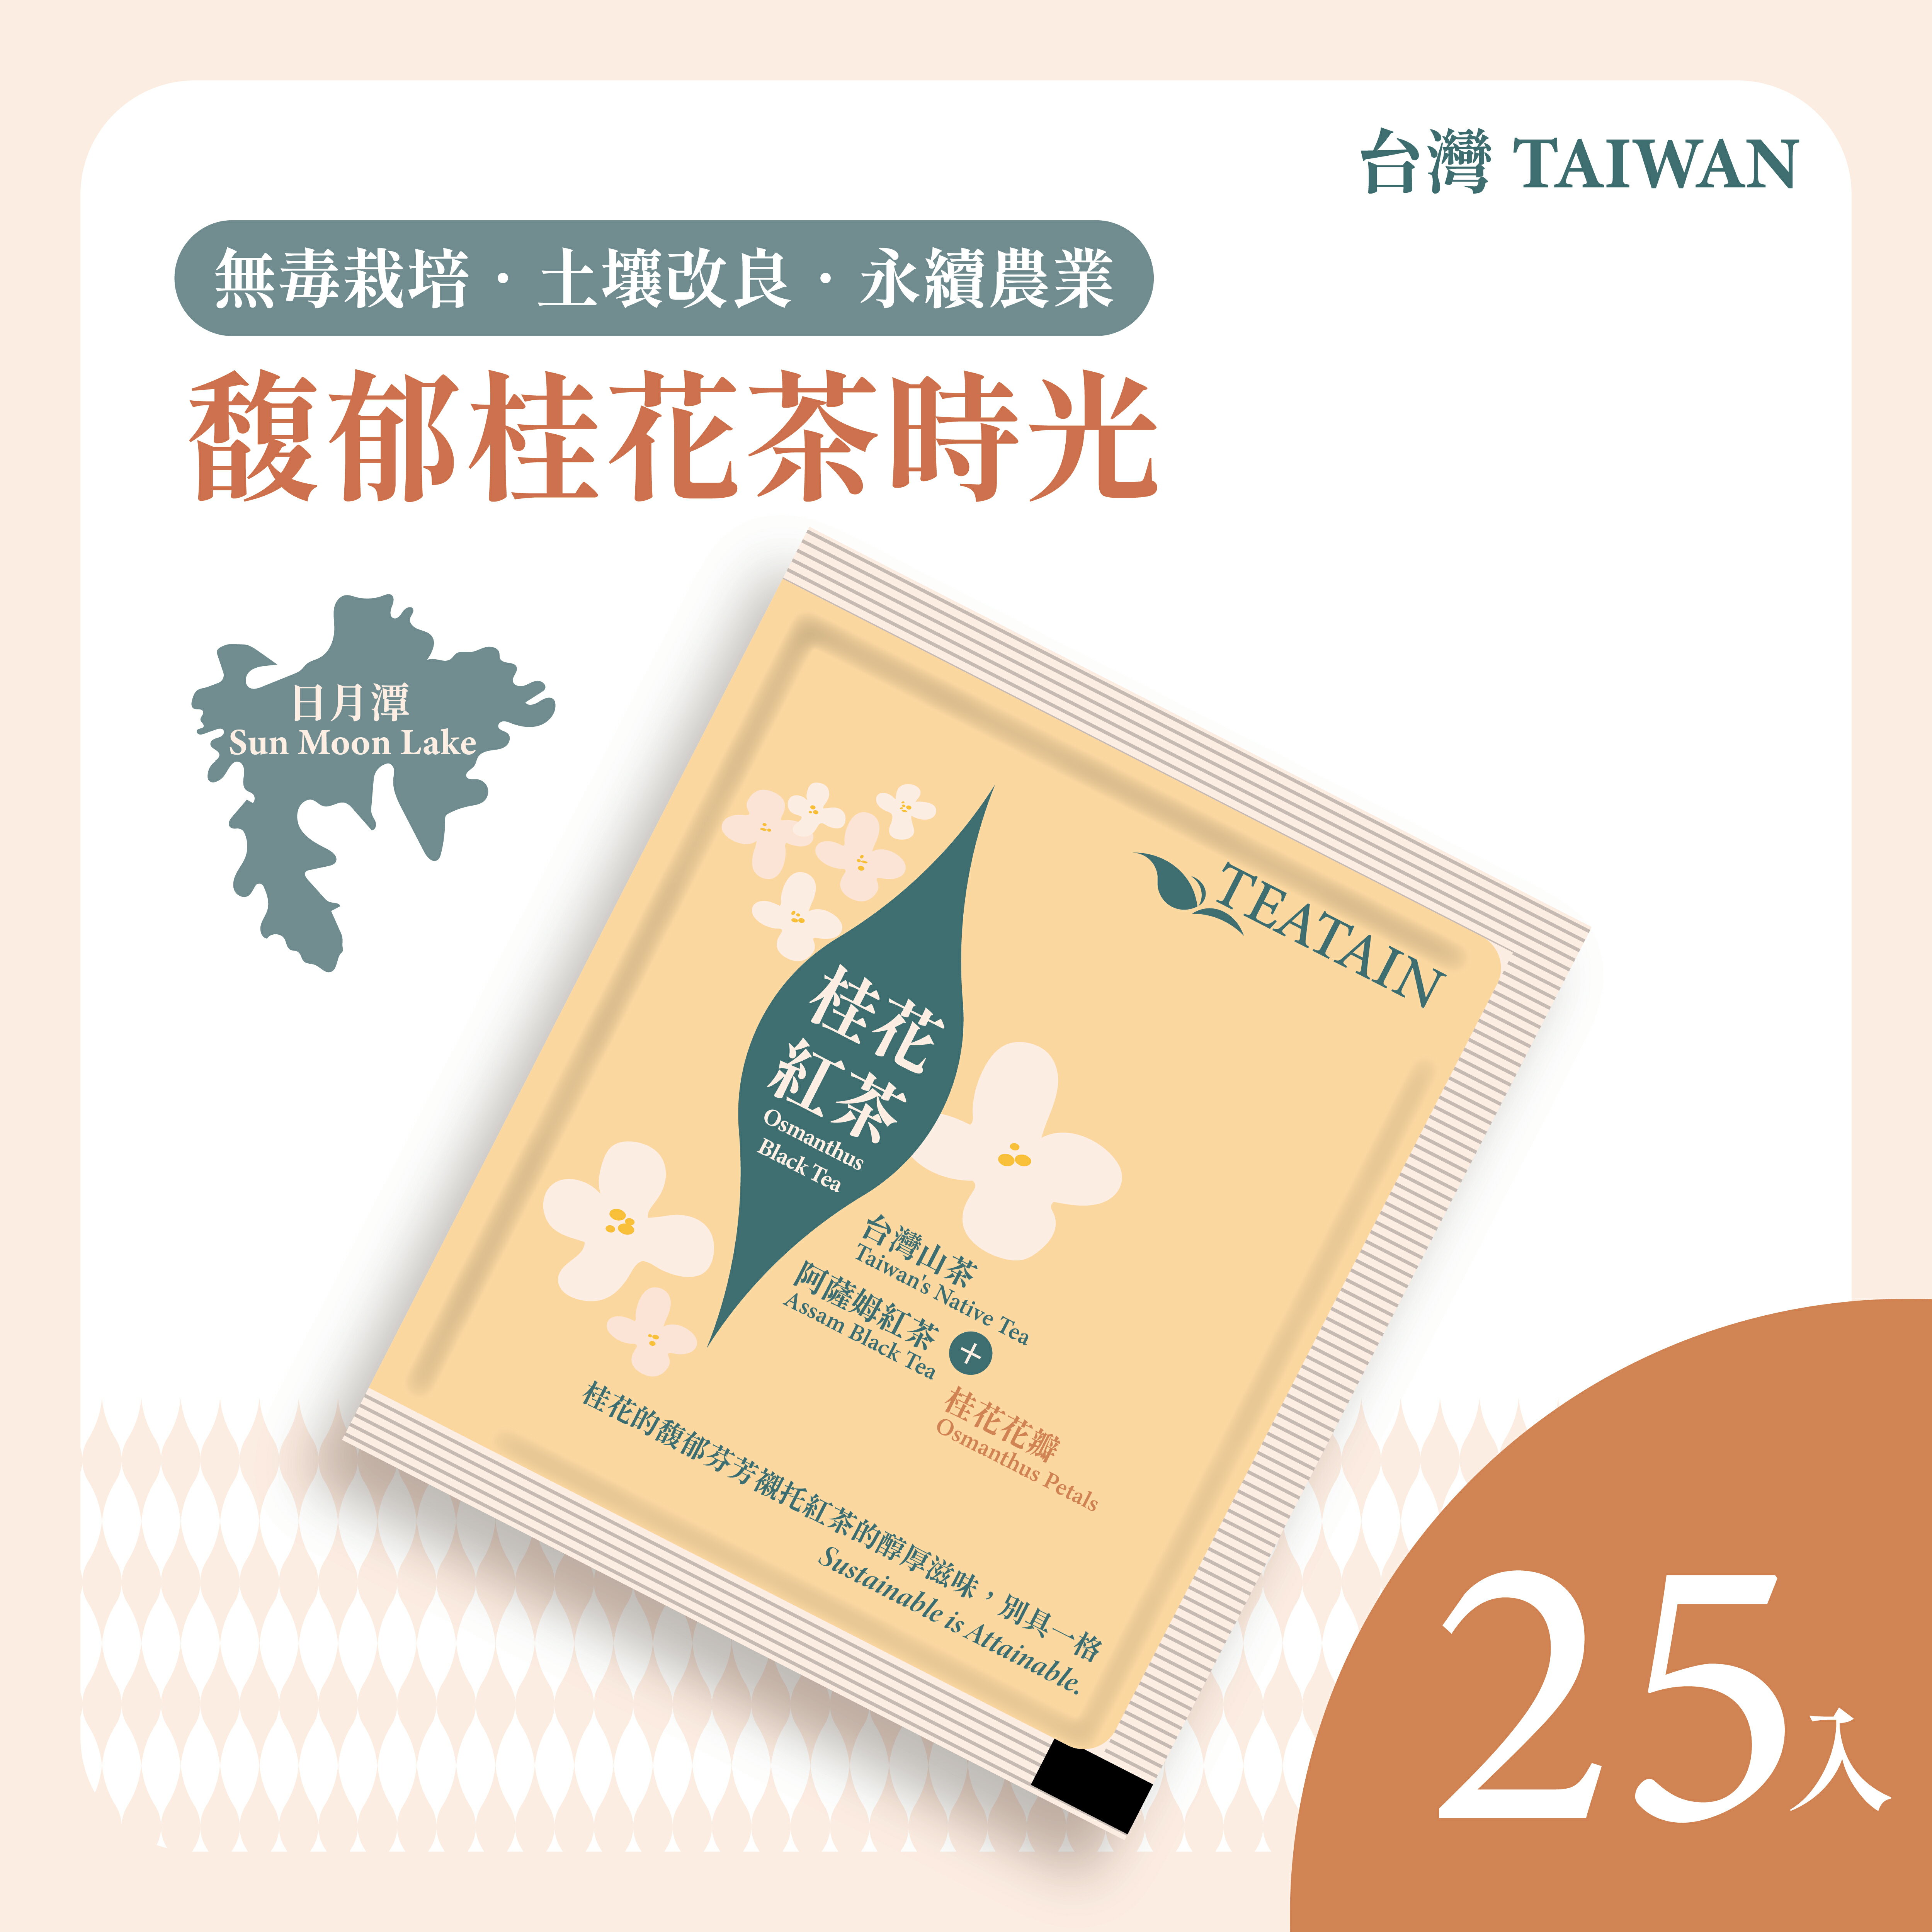 馥郁桂花茶時光 桂花紅茶 25入 茶葉禮盒│阿薩姆紅茶+台灣山茶的黃金比例